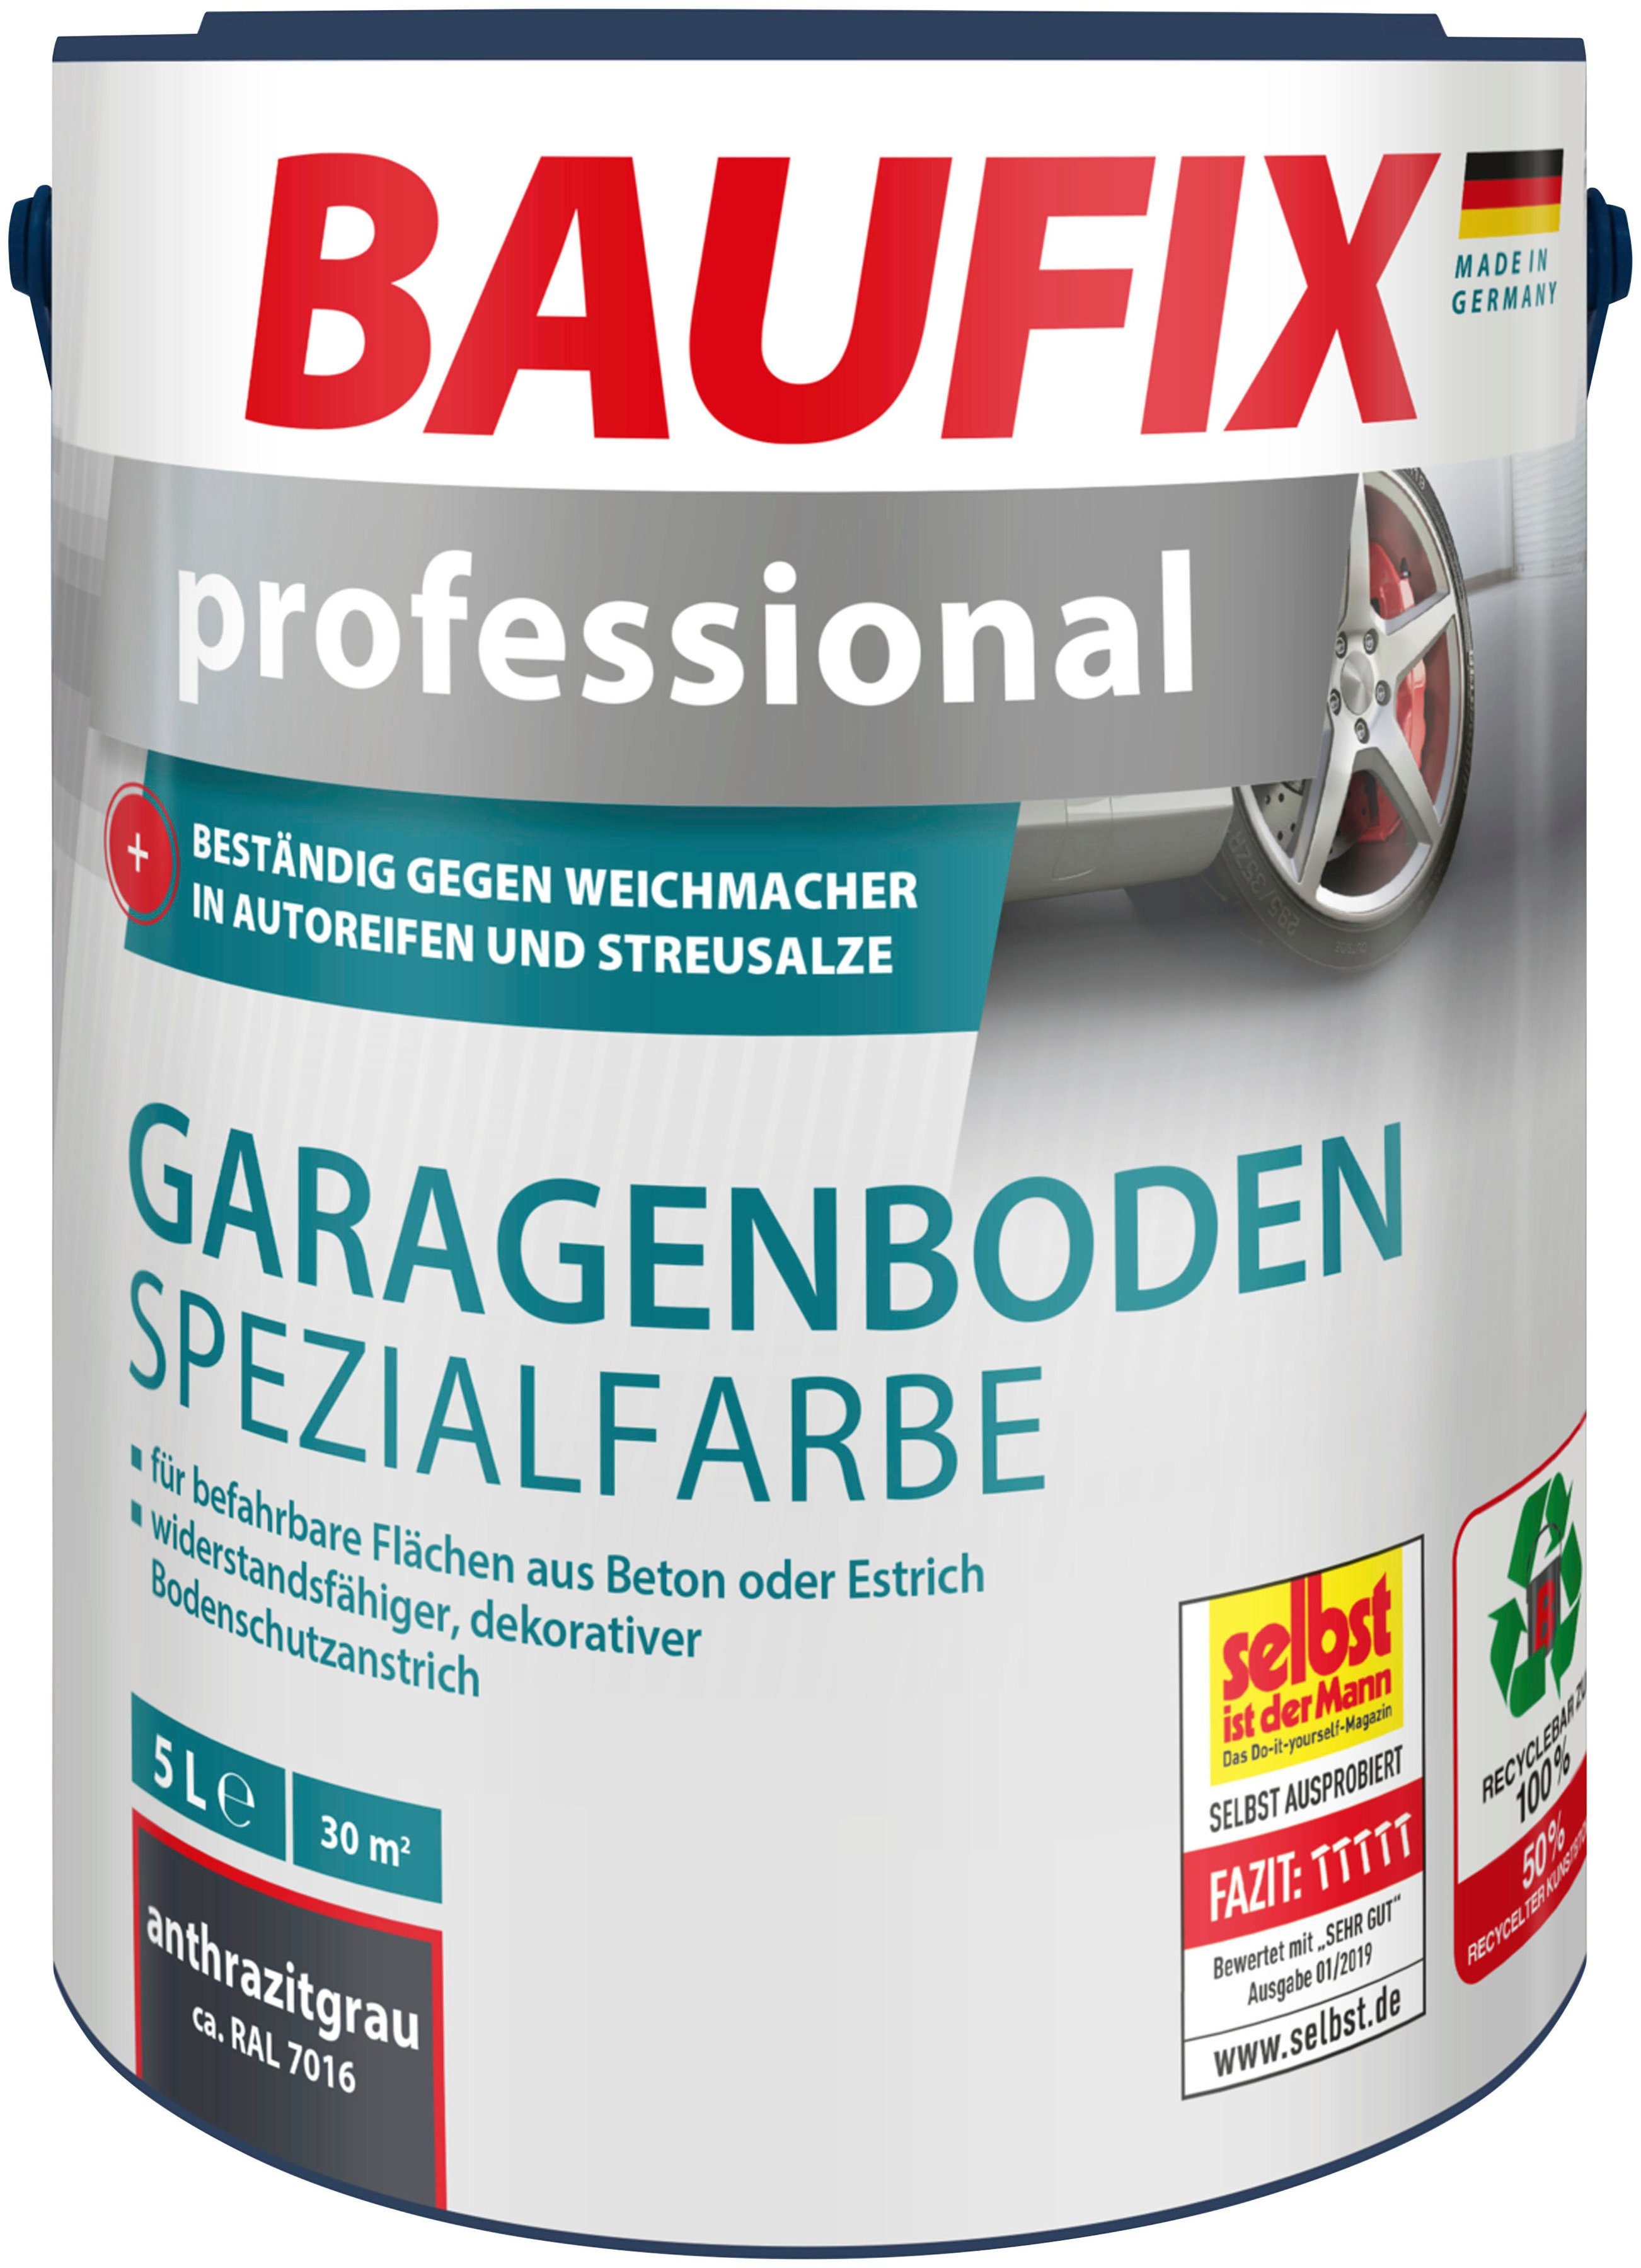 Baufix Acryl-Flüssigkunststoff professional Garagenboden Spezialfarbe, wasserbeständig, UV beständig, wetterbeständig, 5L, matt anthrazitgrau